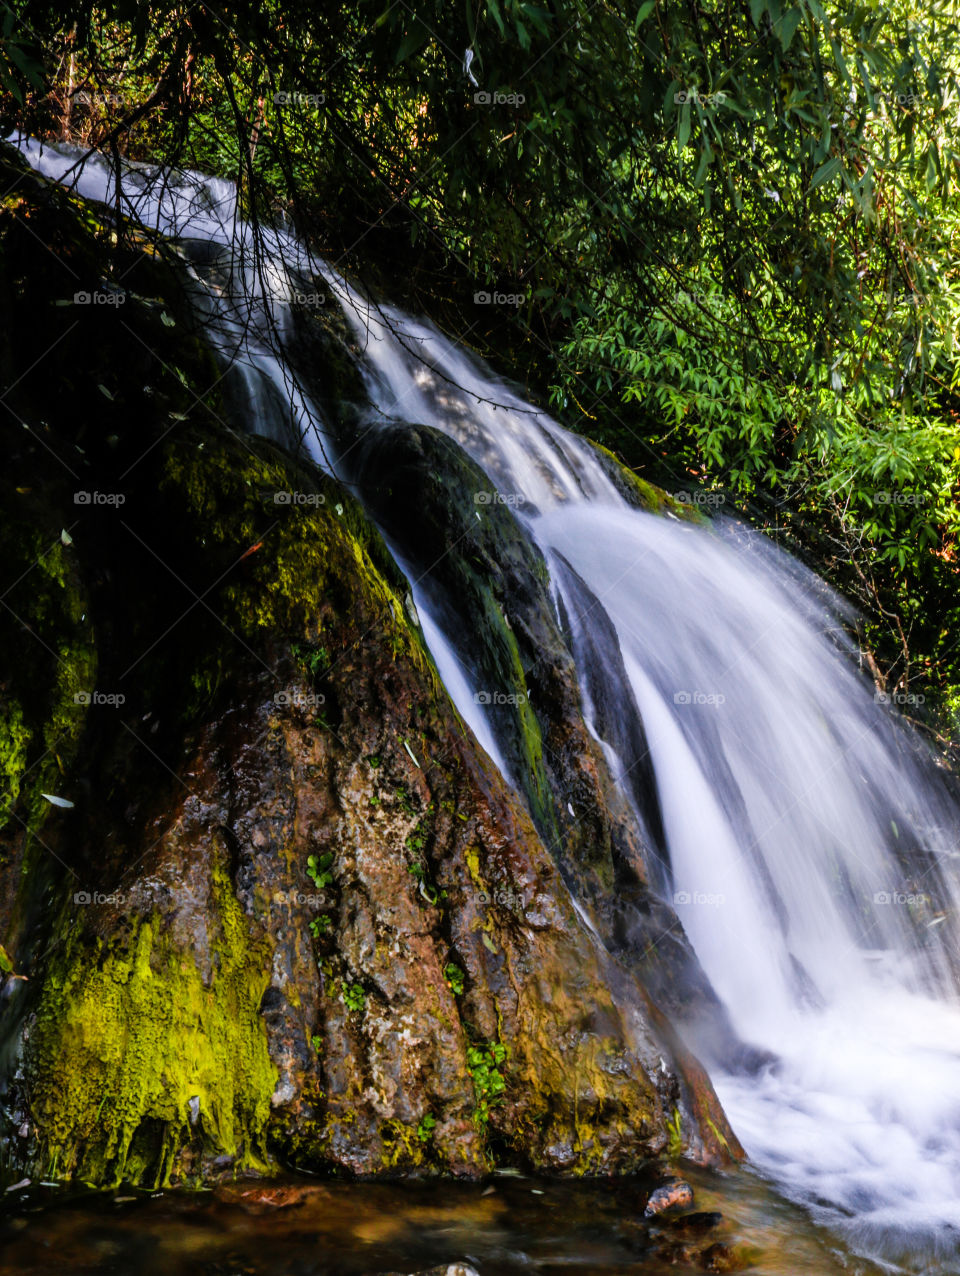 Long exposure!
Waterfall - Nainital (India)